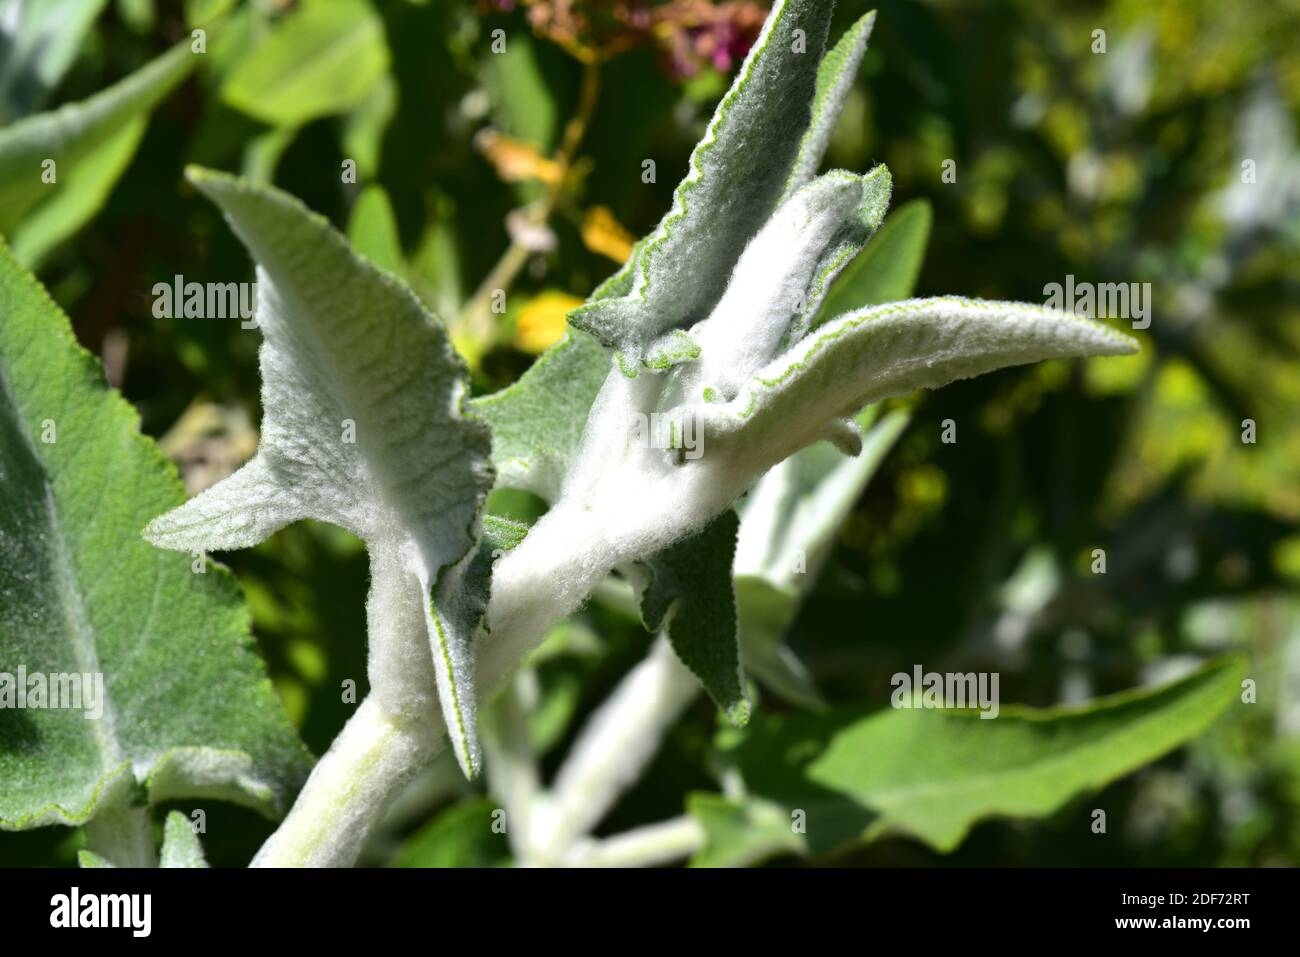 La sauge des îles Canaries (Salvia canariensis) est un arbuste vivace endémique aux îles Canaries. Tiges et feuilles velues. Banque D'Images